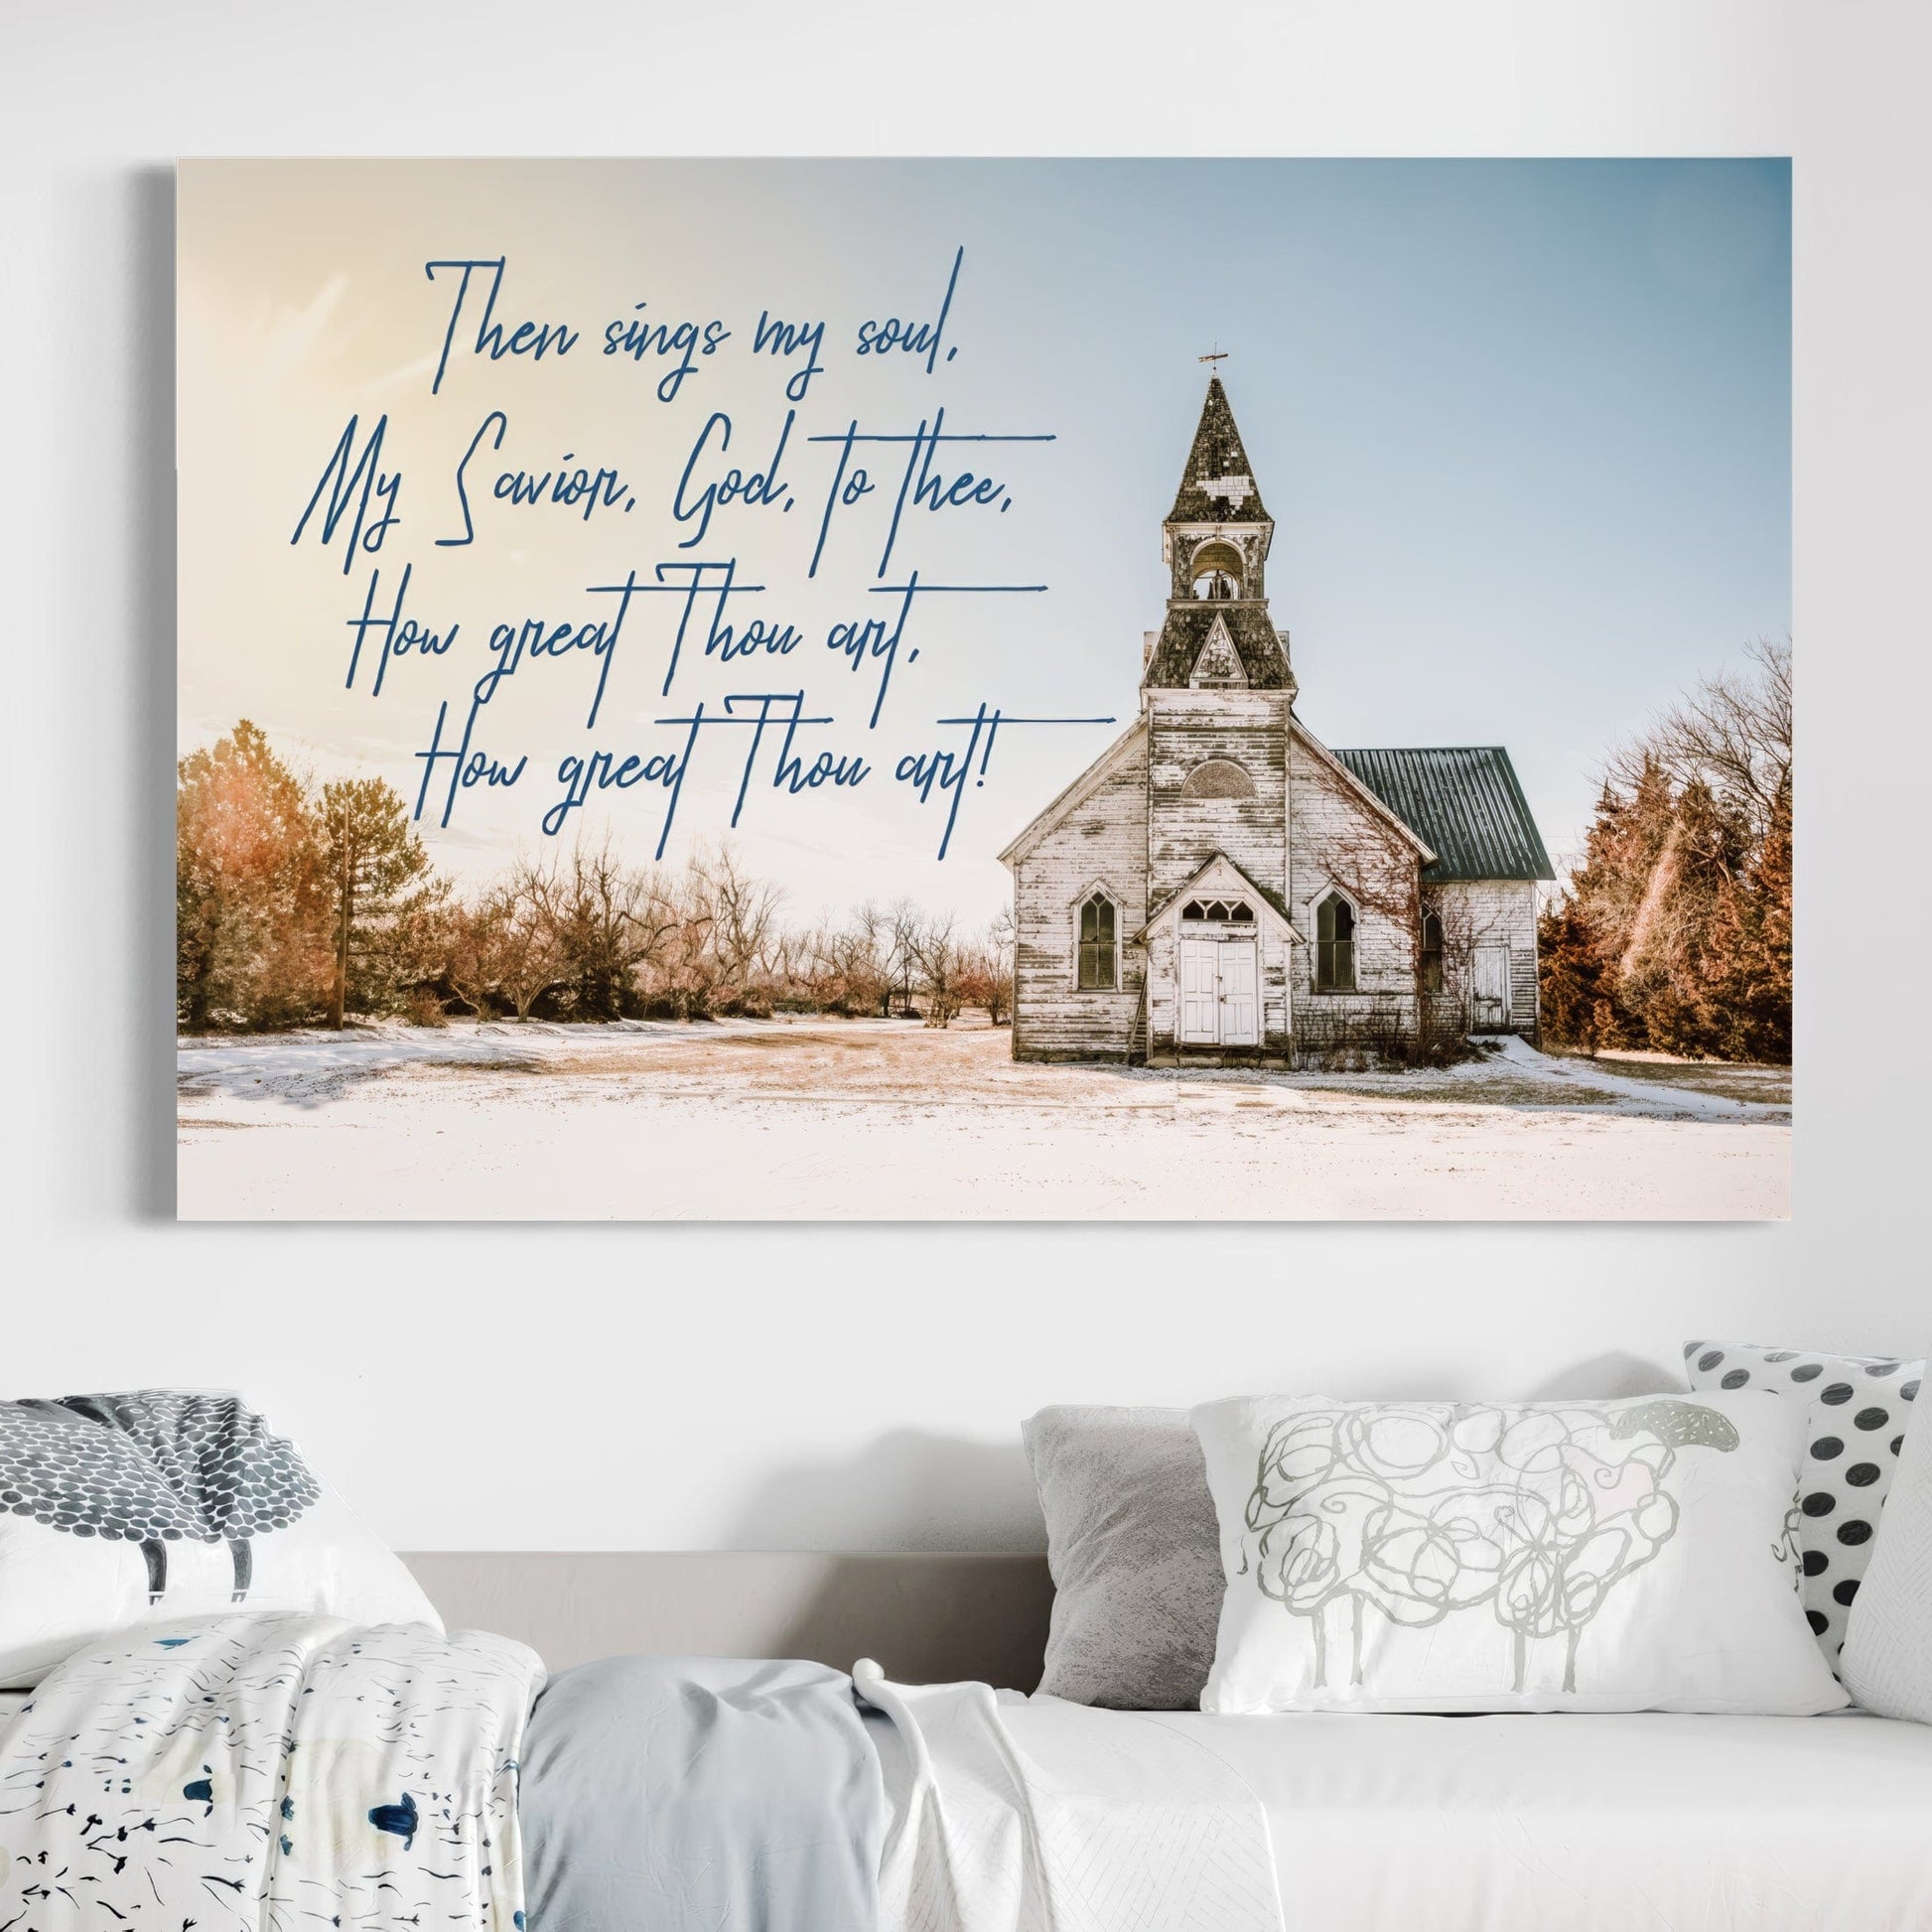 How Great Thou Art Lyrics & Old Church Wall Art Teri James Photography